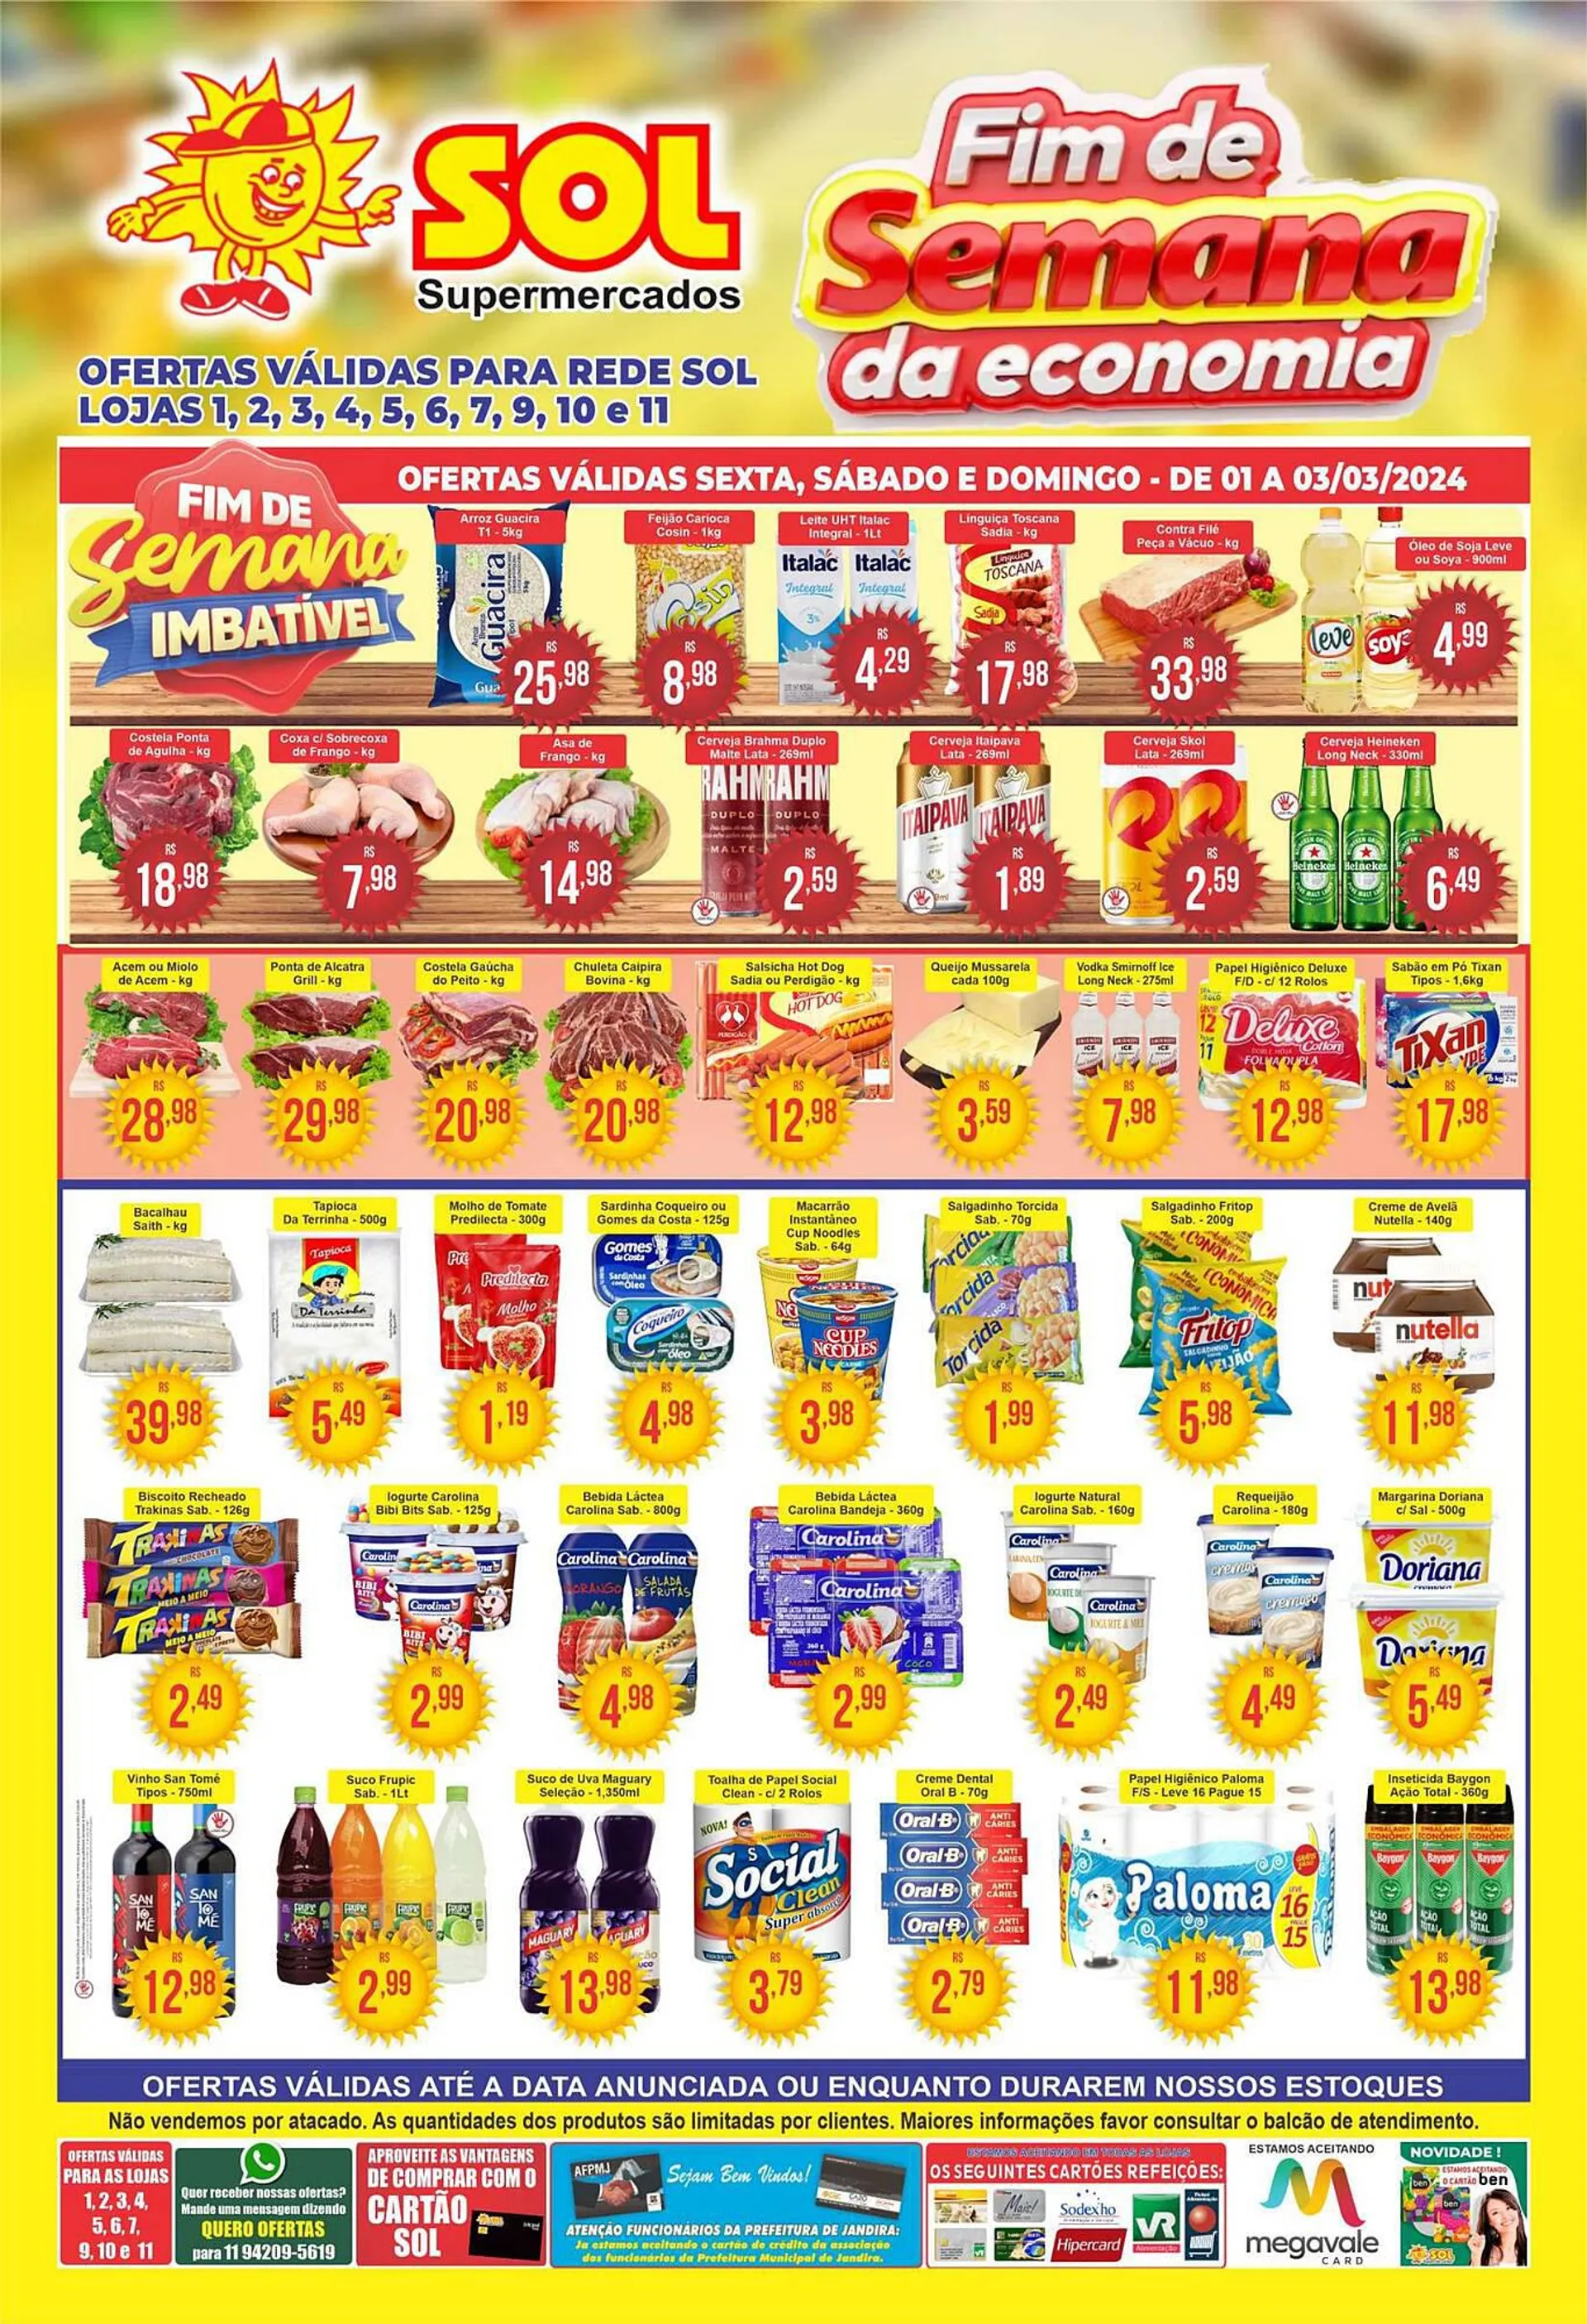 Encarte de Catálogo Sol Supermercados 1 de março até 3 de março 2024 - Pagina 